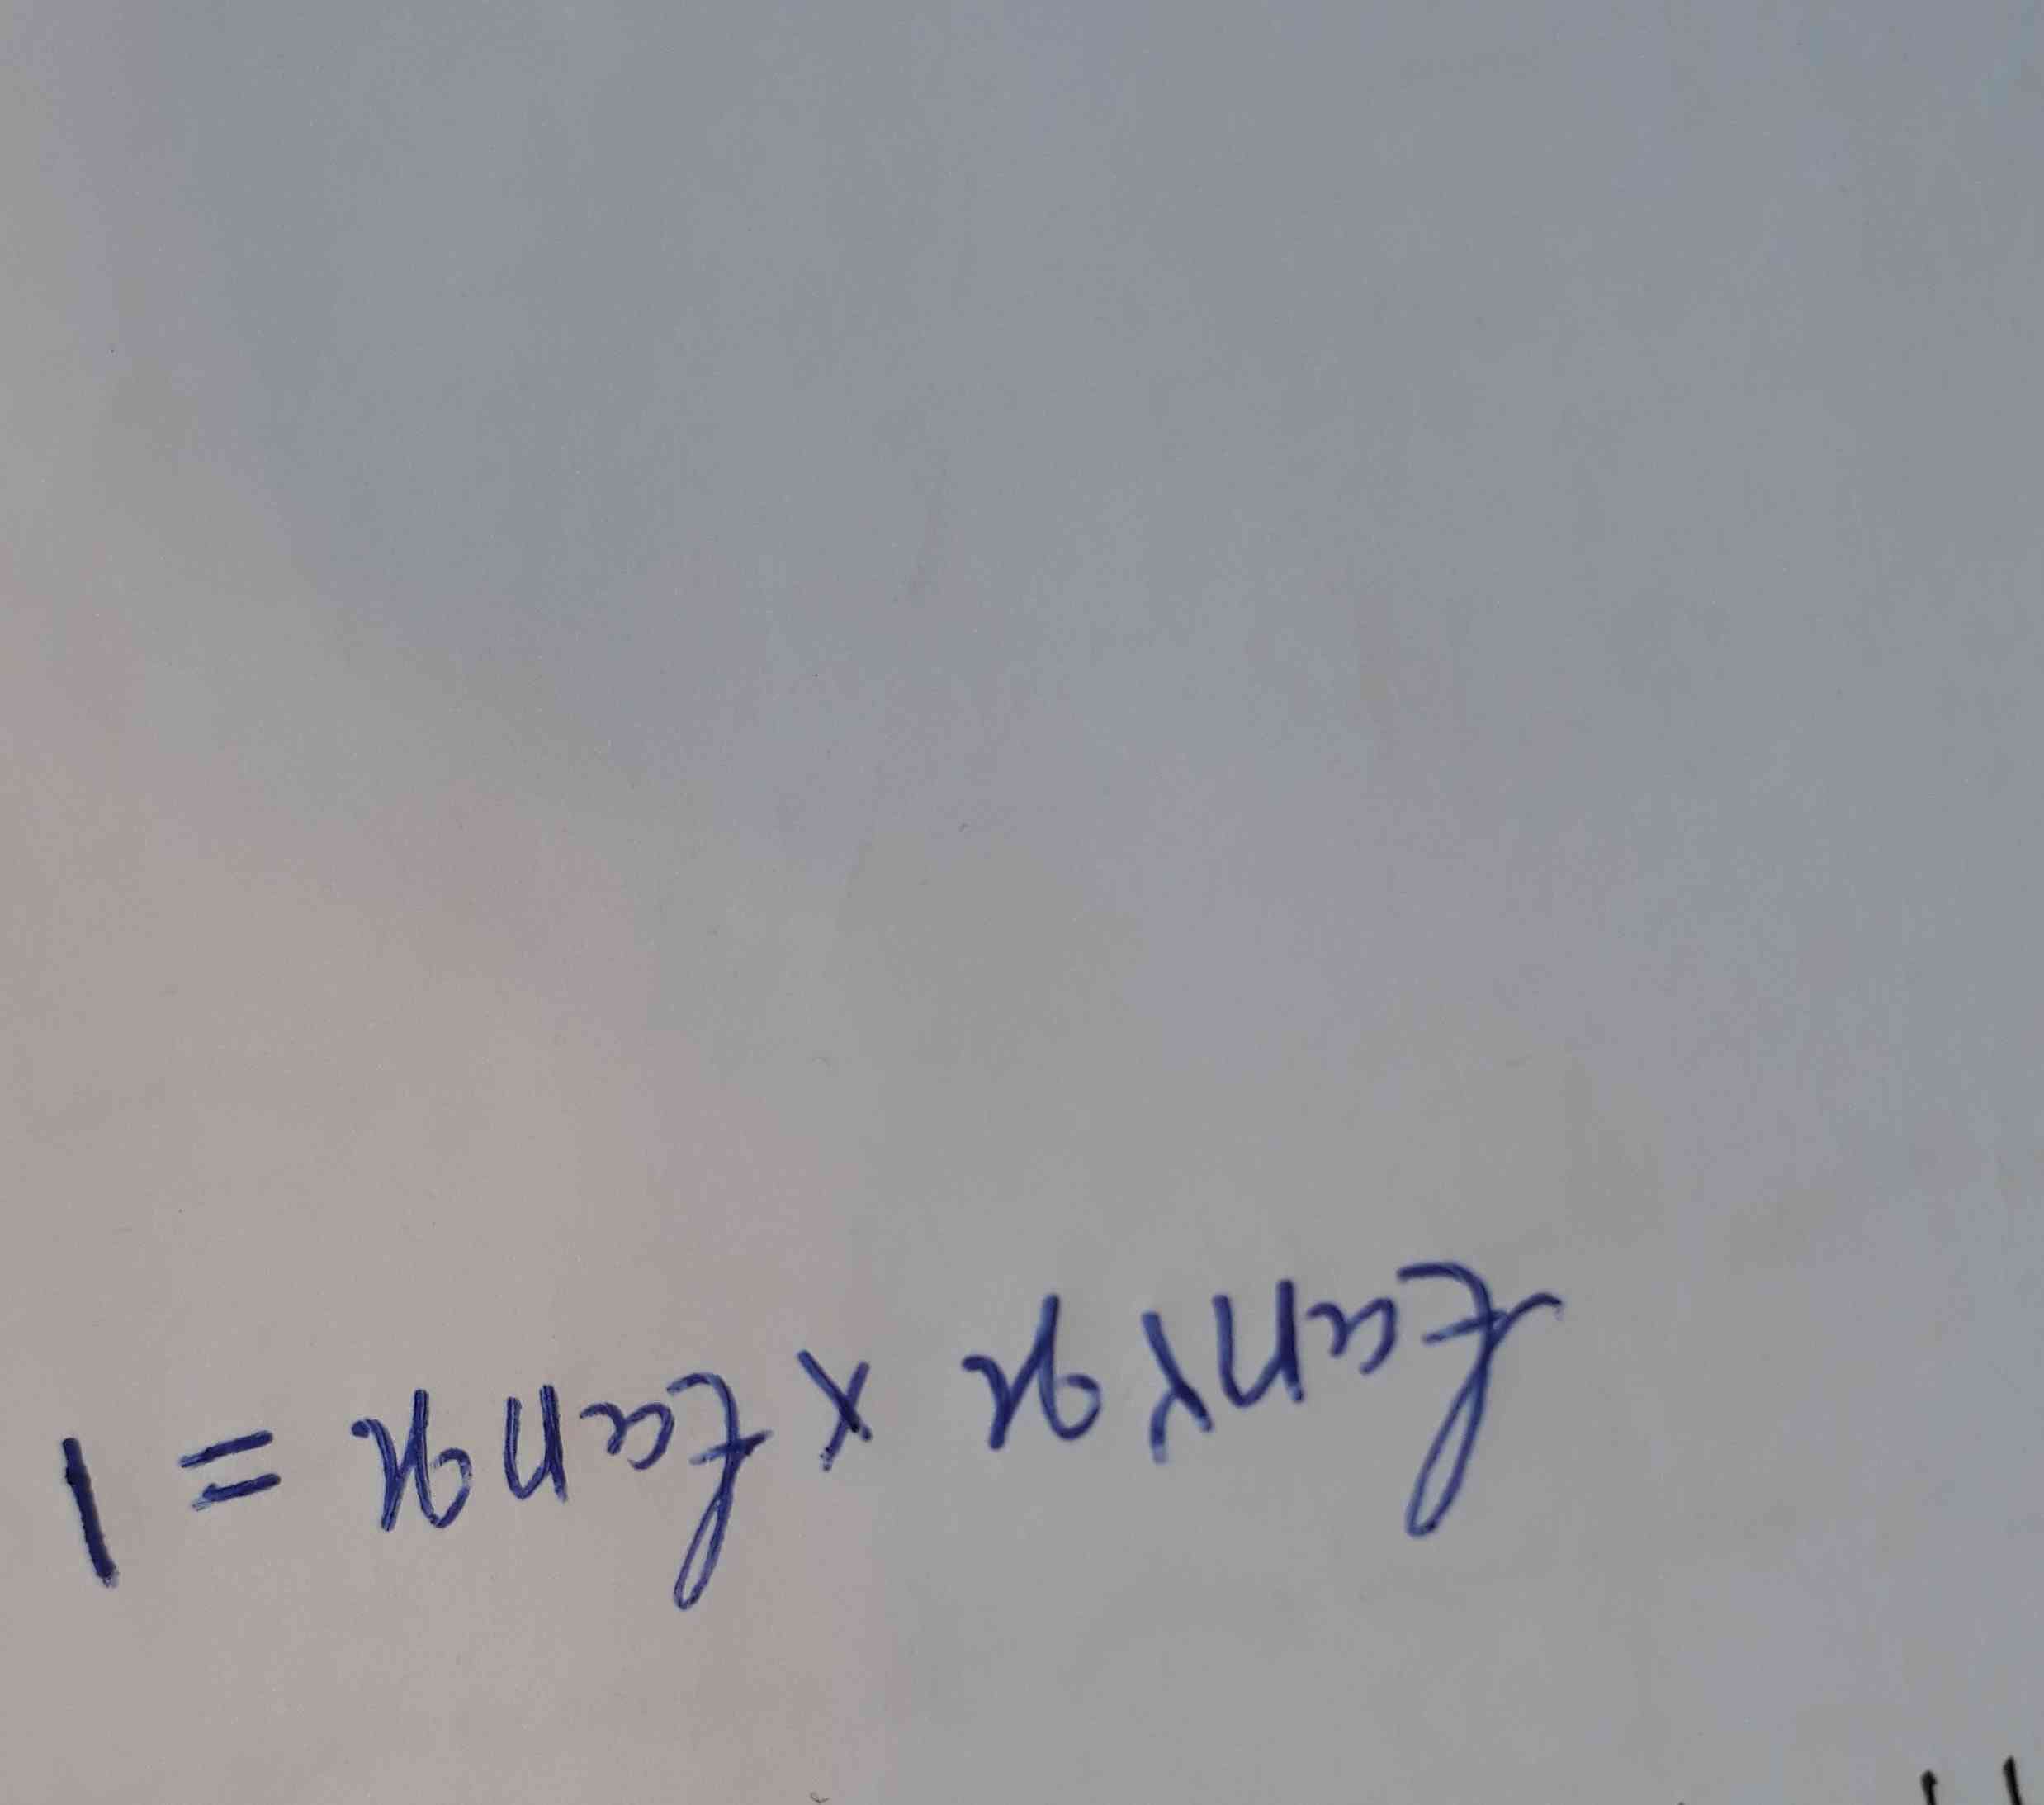 حل معادلات تانژانتی.
میشه اینو جواب بدید ! 